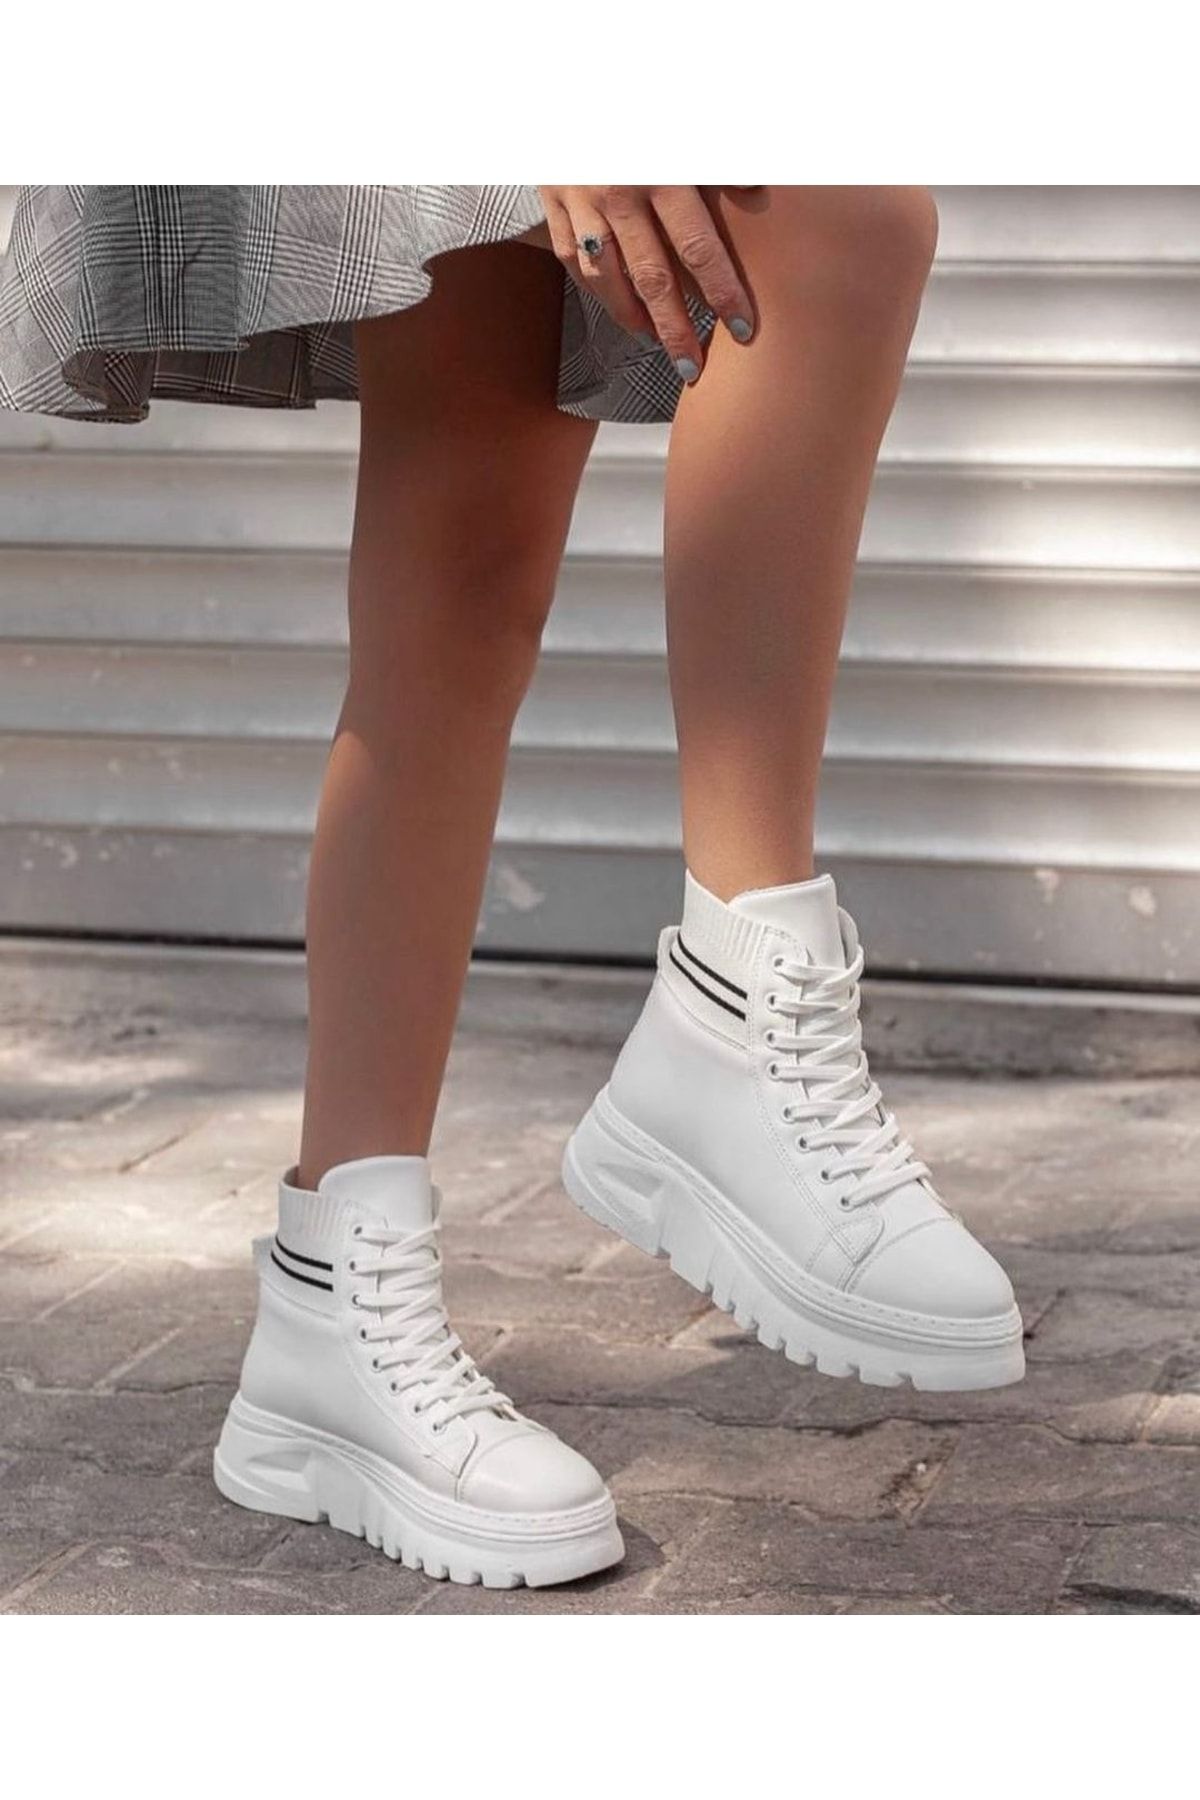 Afilli Kadın Beyaz Kalın Platform Taban Triko Sneaker Günlük Rahat Bağcıkl Spor Kışlık Bot Ayakkabı